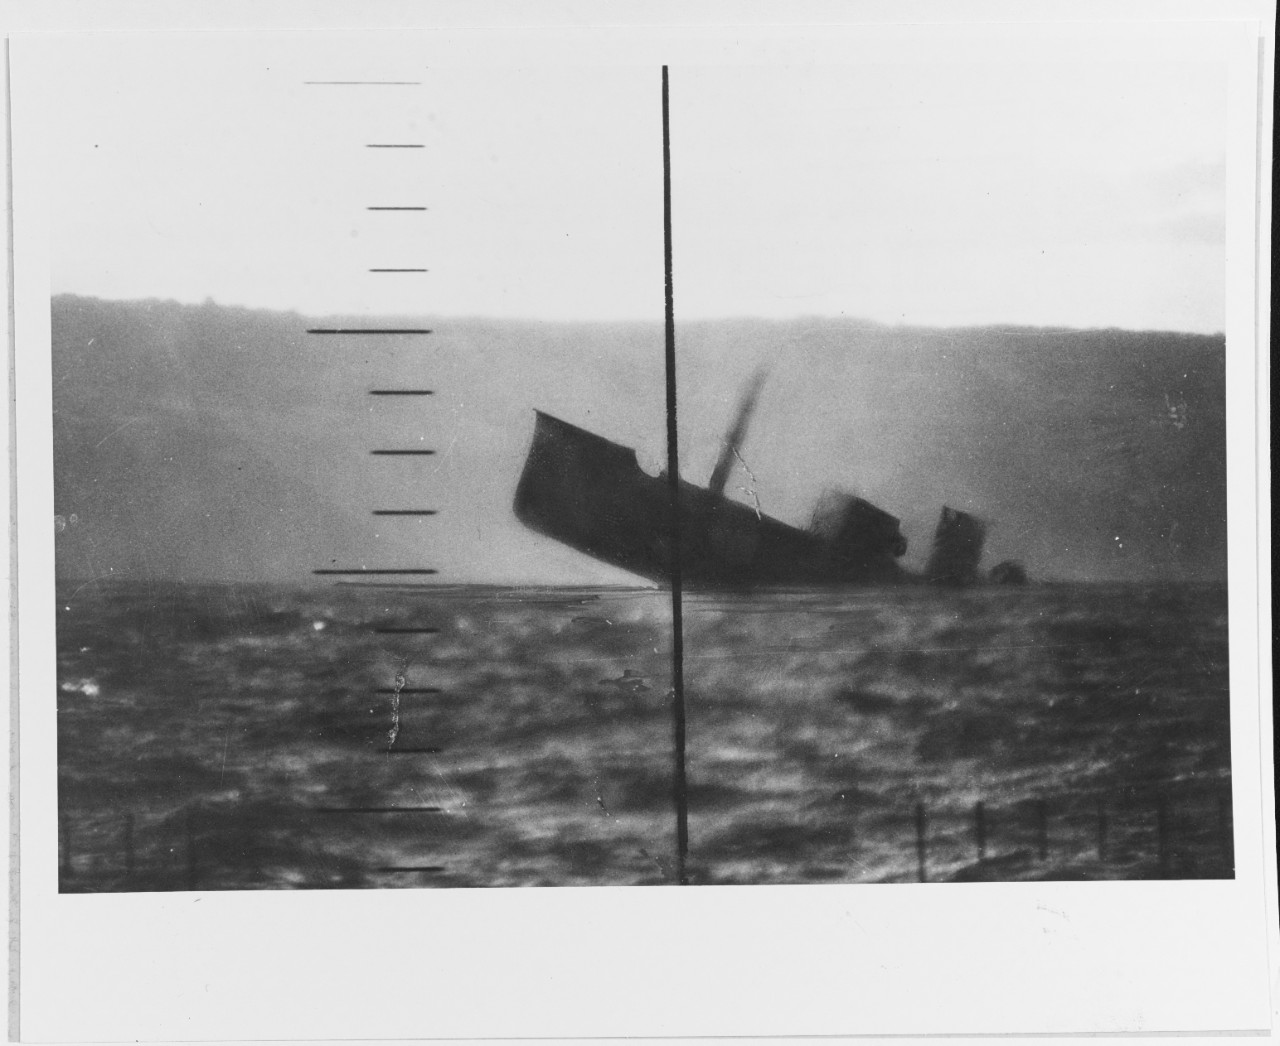 Sinking Japanese ship